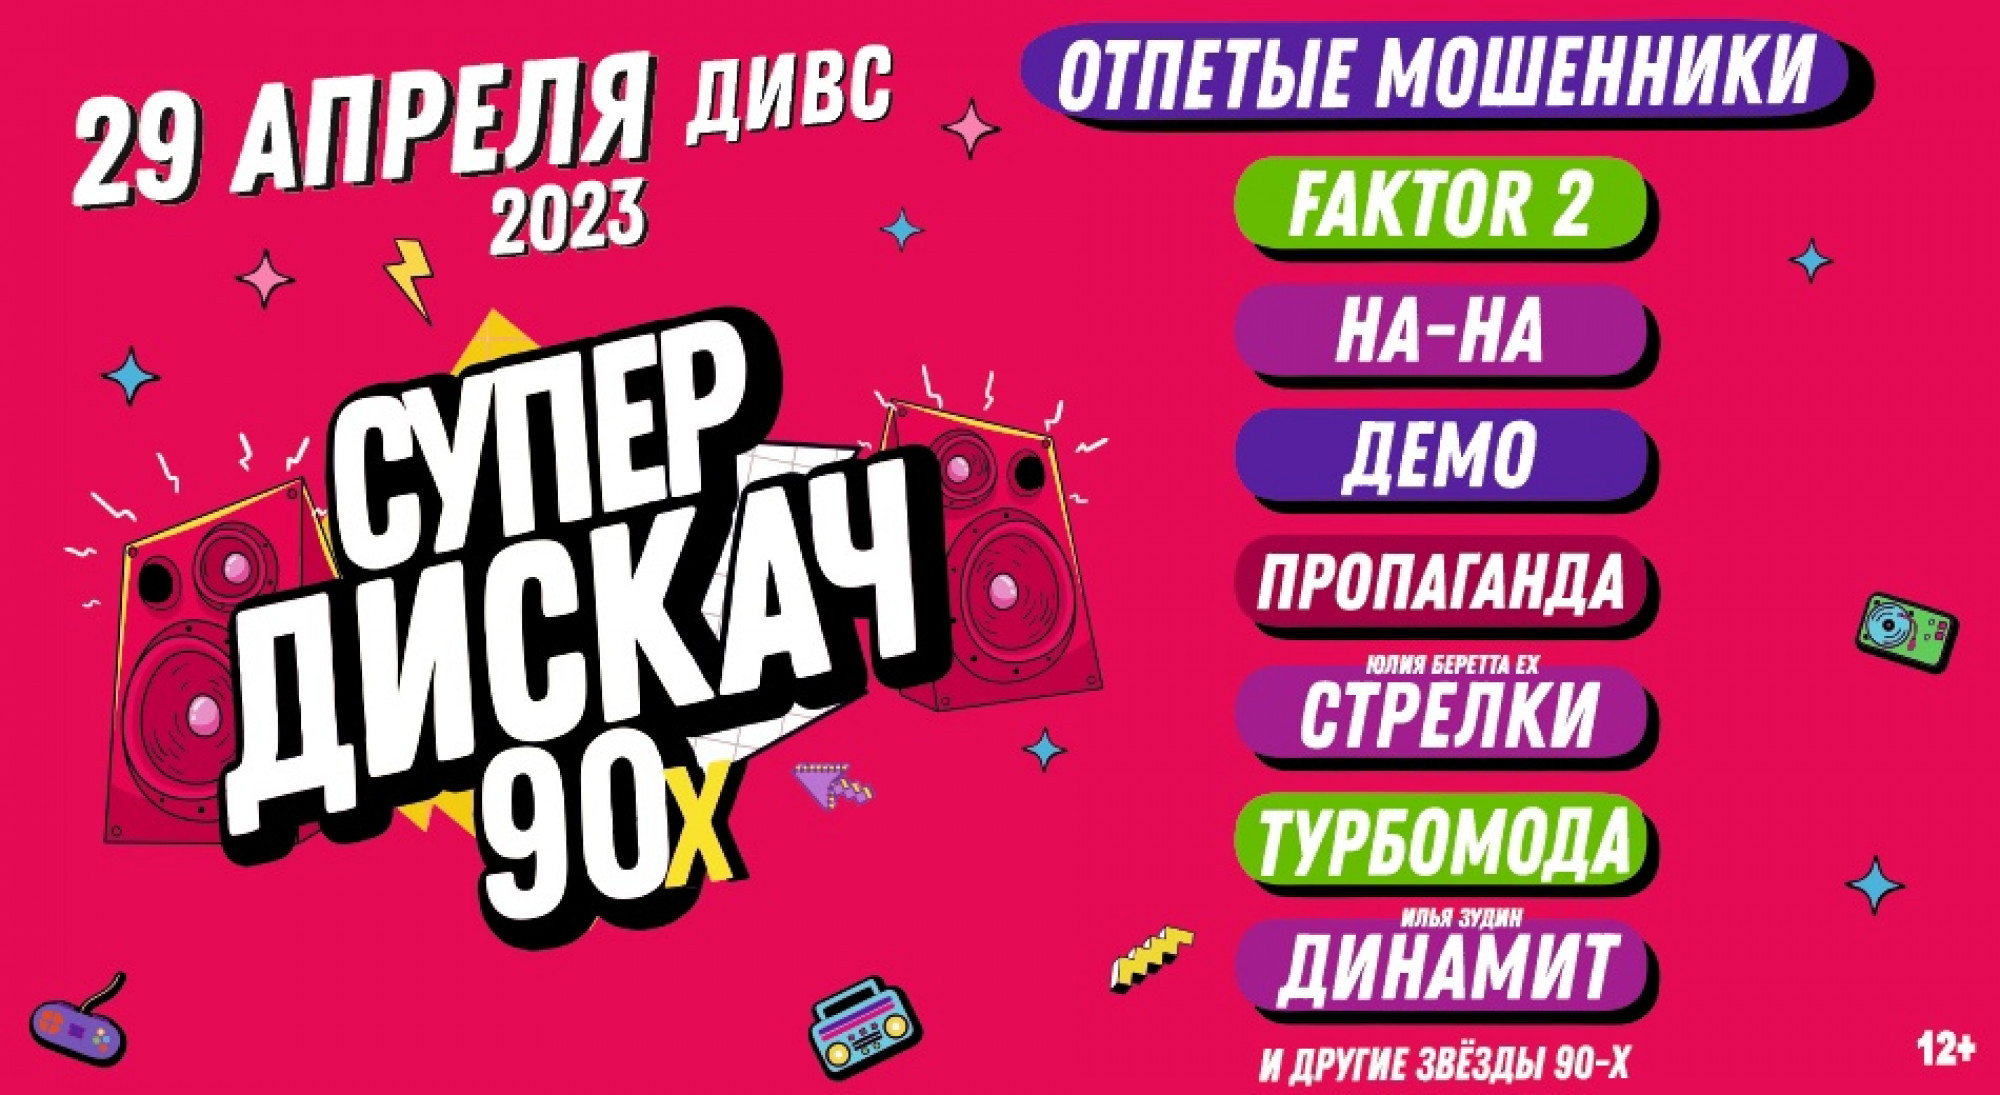 Дискотека 90 купить билеты 2024 новосибирск